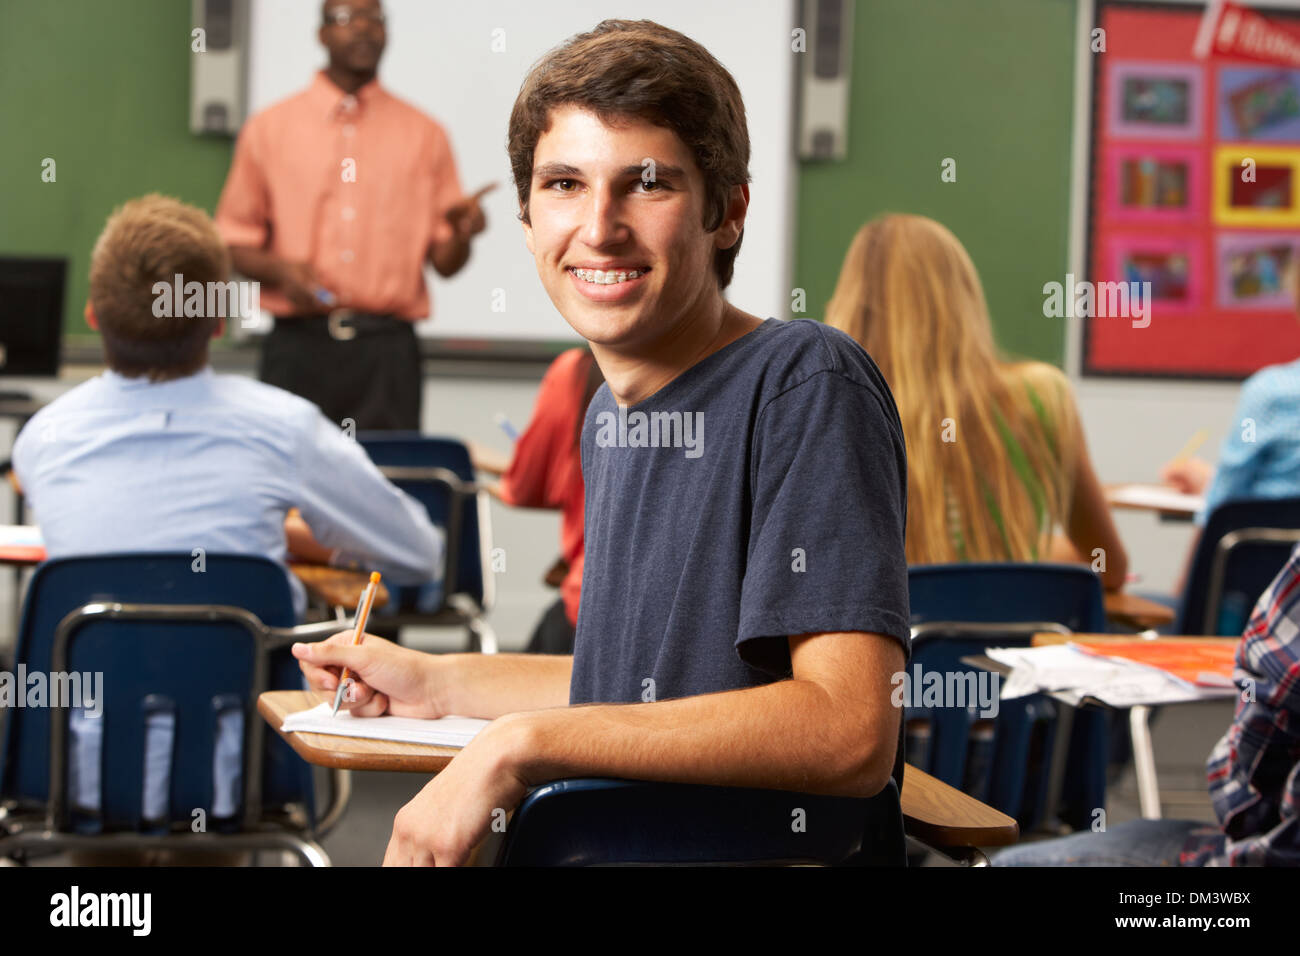 Les adolescents de sexe masculin dans la salle de classe de l'élève Banque D'Images